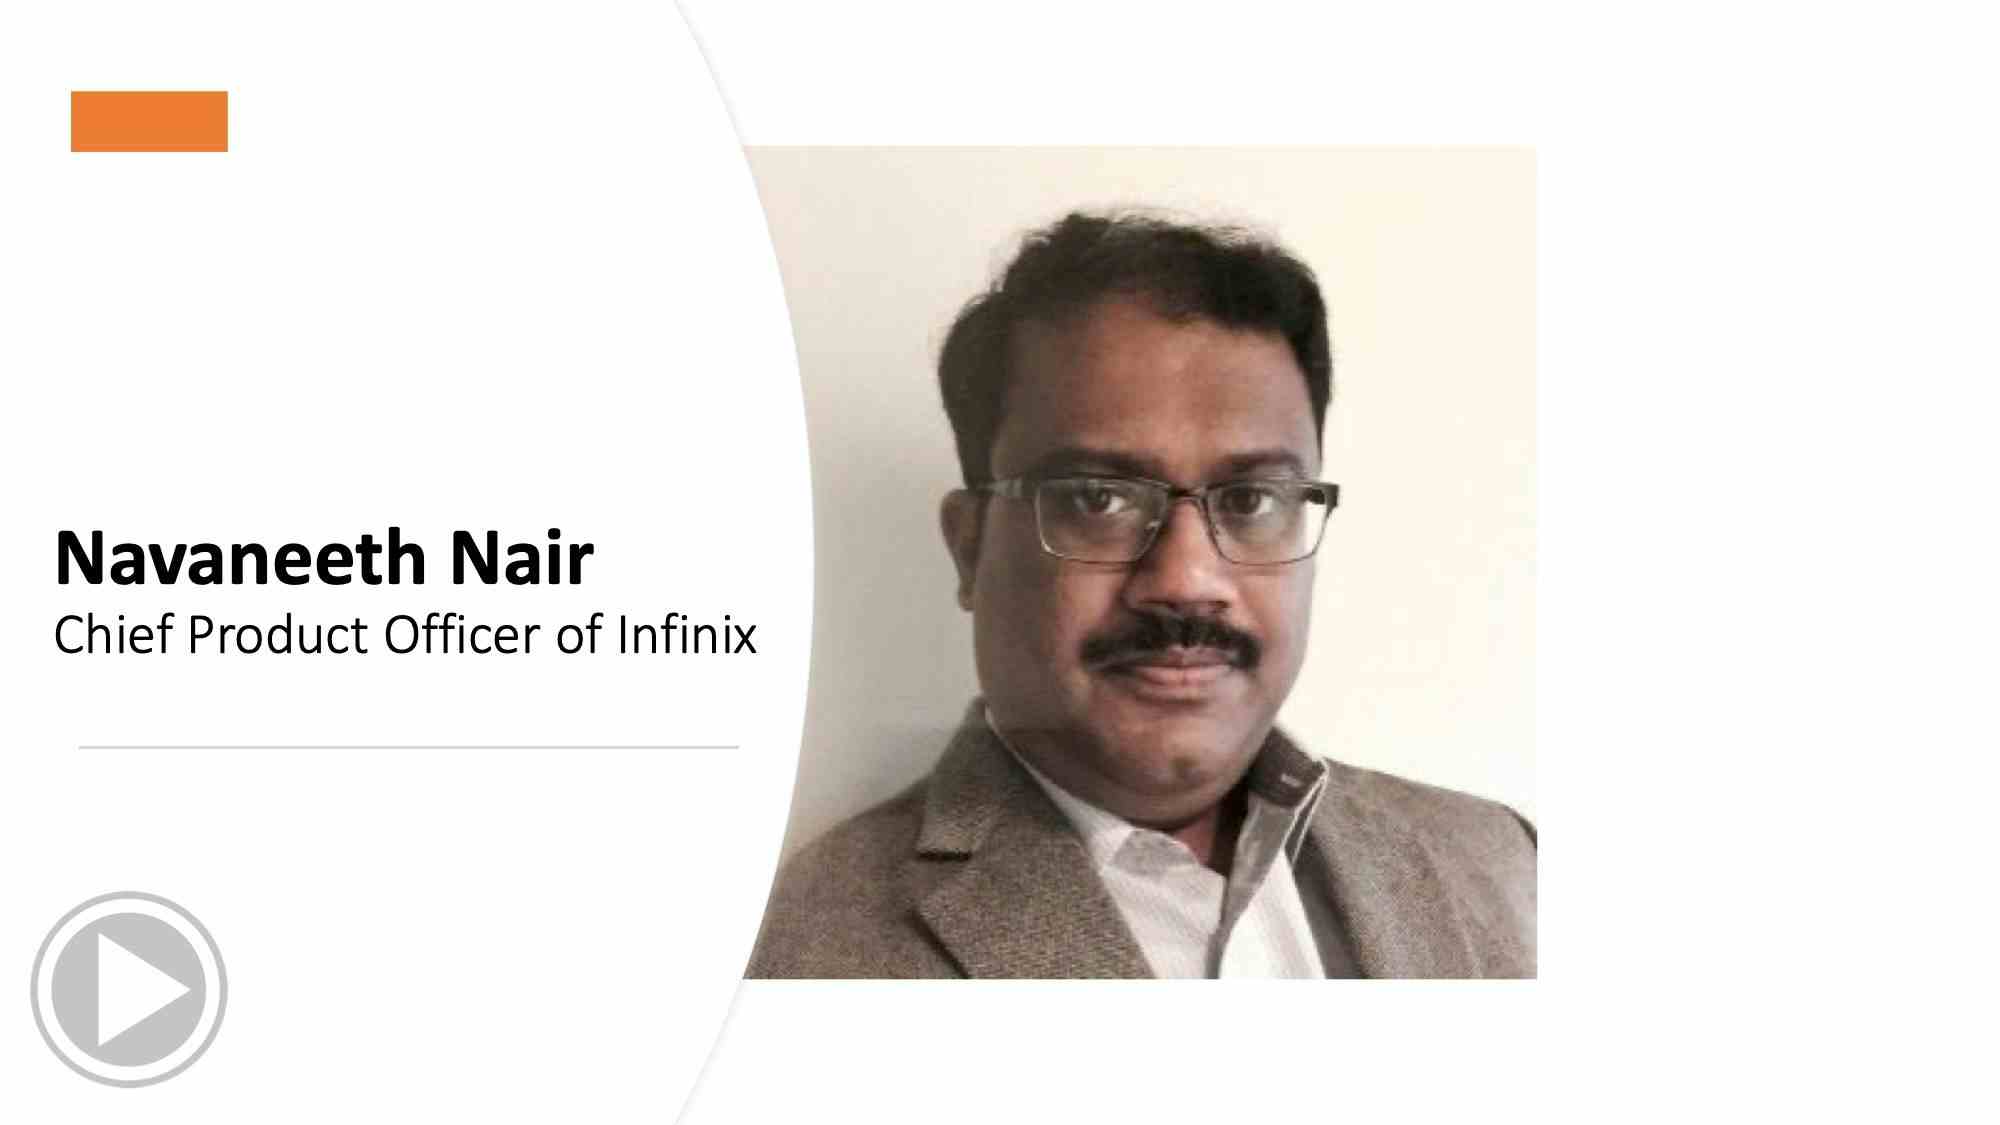 Navaneeth Nair gives expert advice